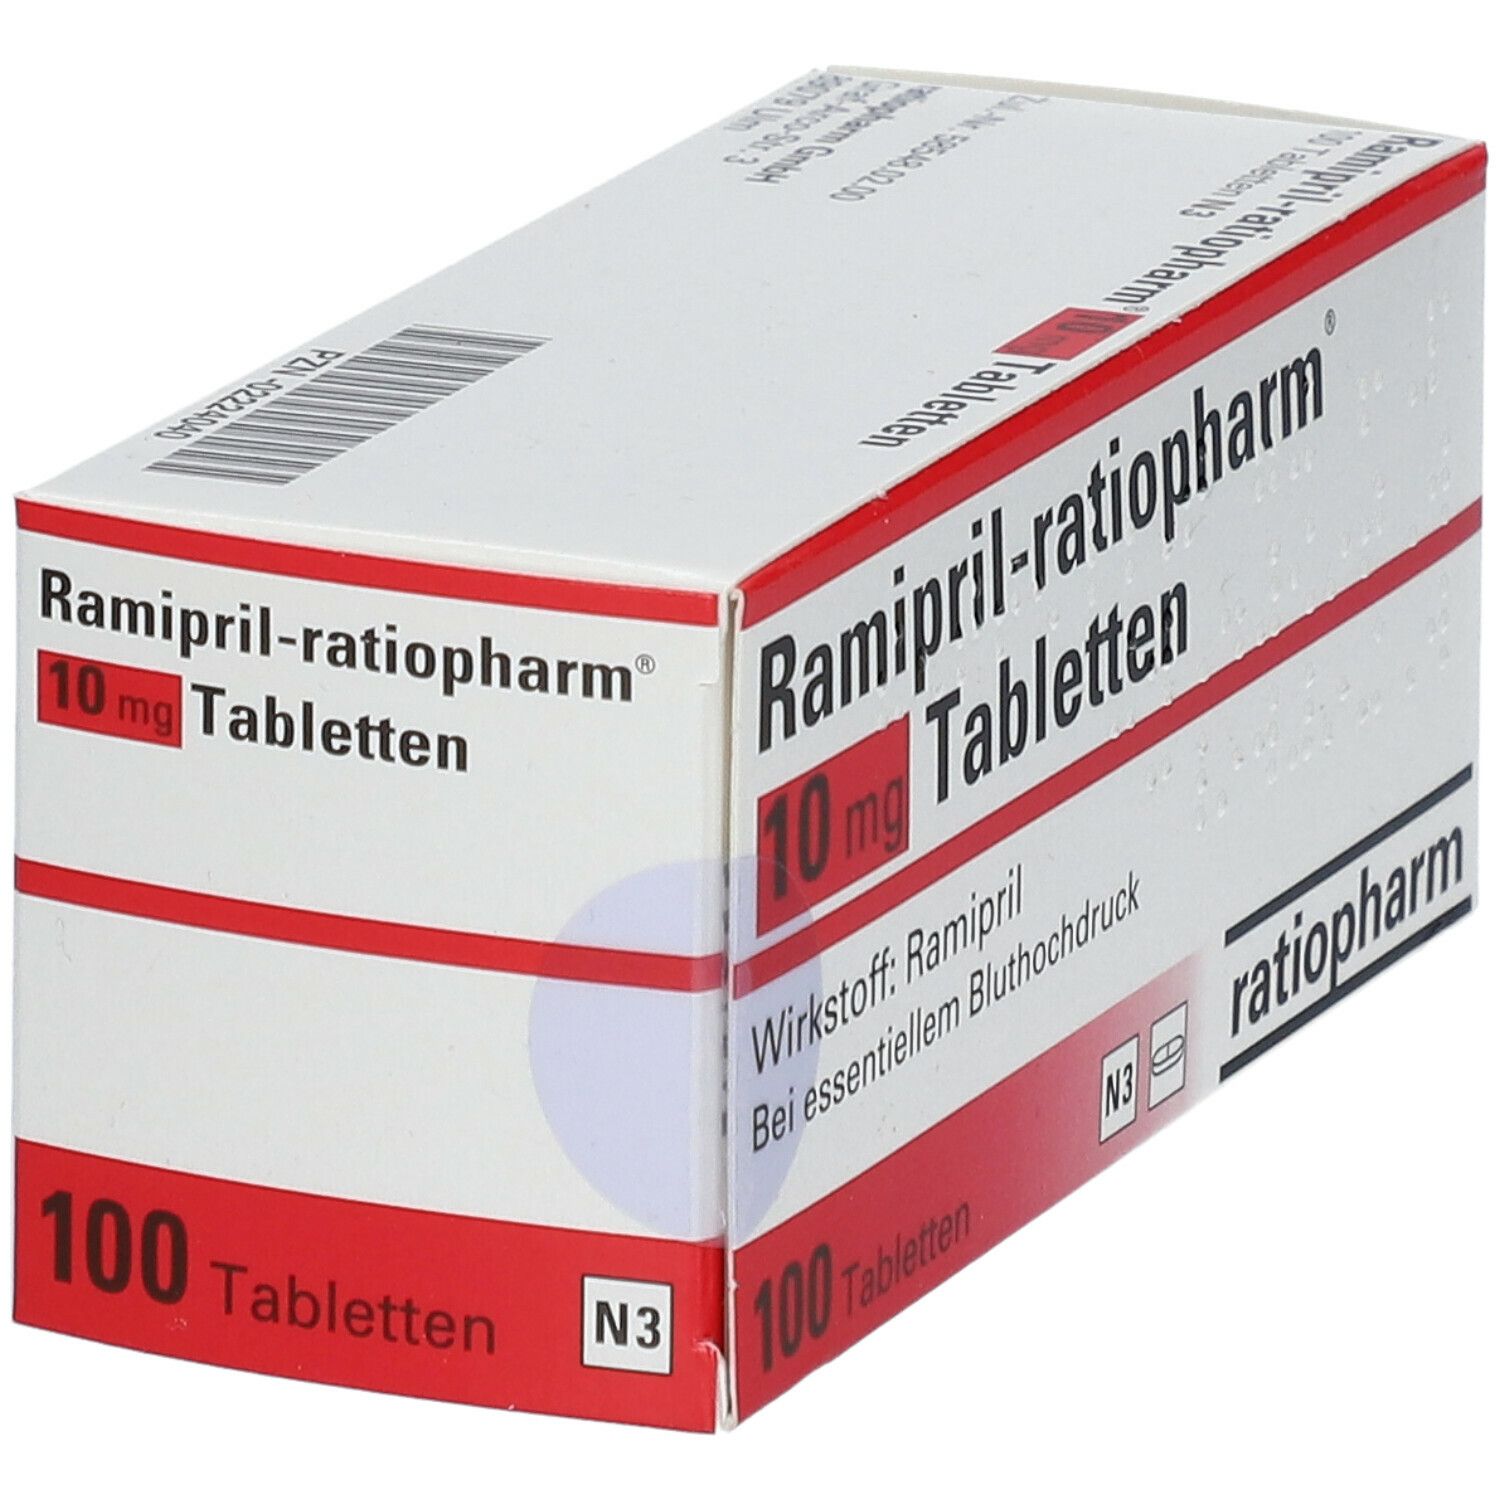 Ramipril-ratiopharm® 10 mg